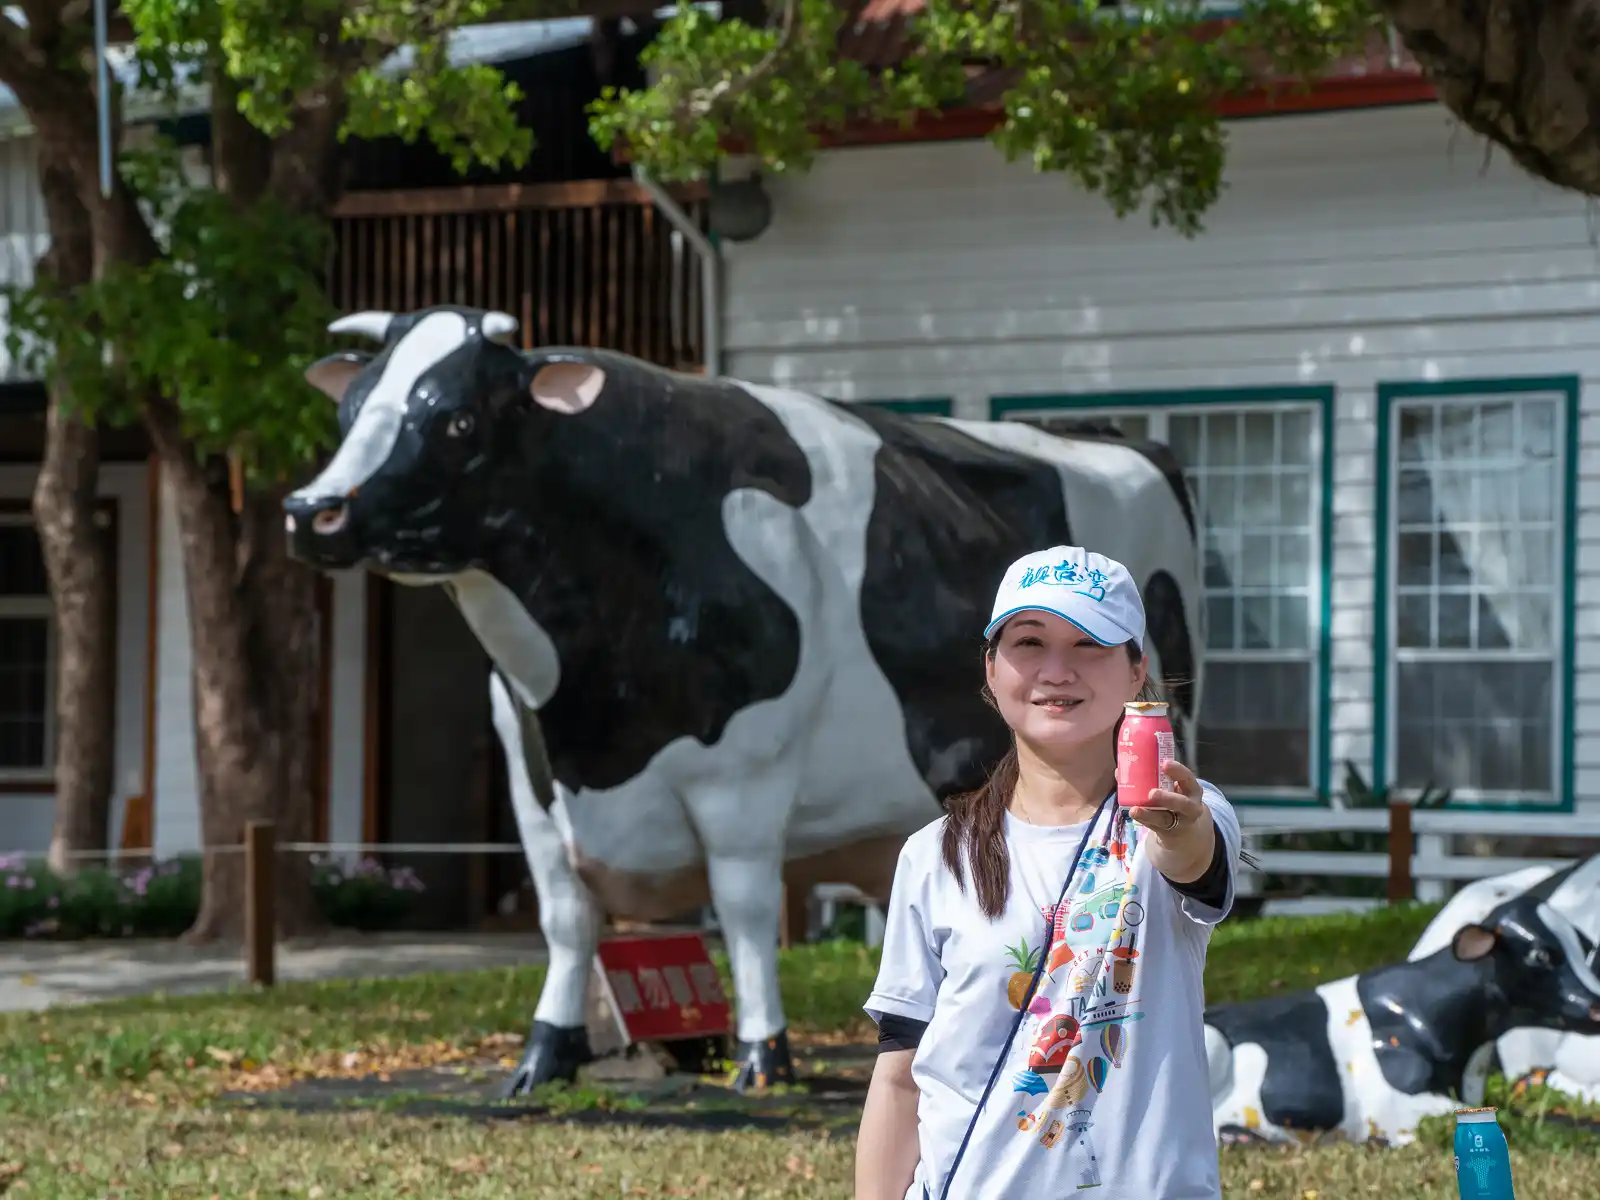 A tourist smiling as she enjoys a farm-made yogurt.